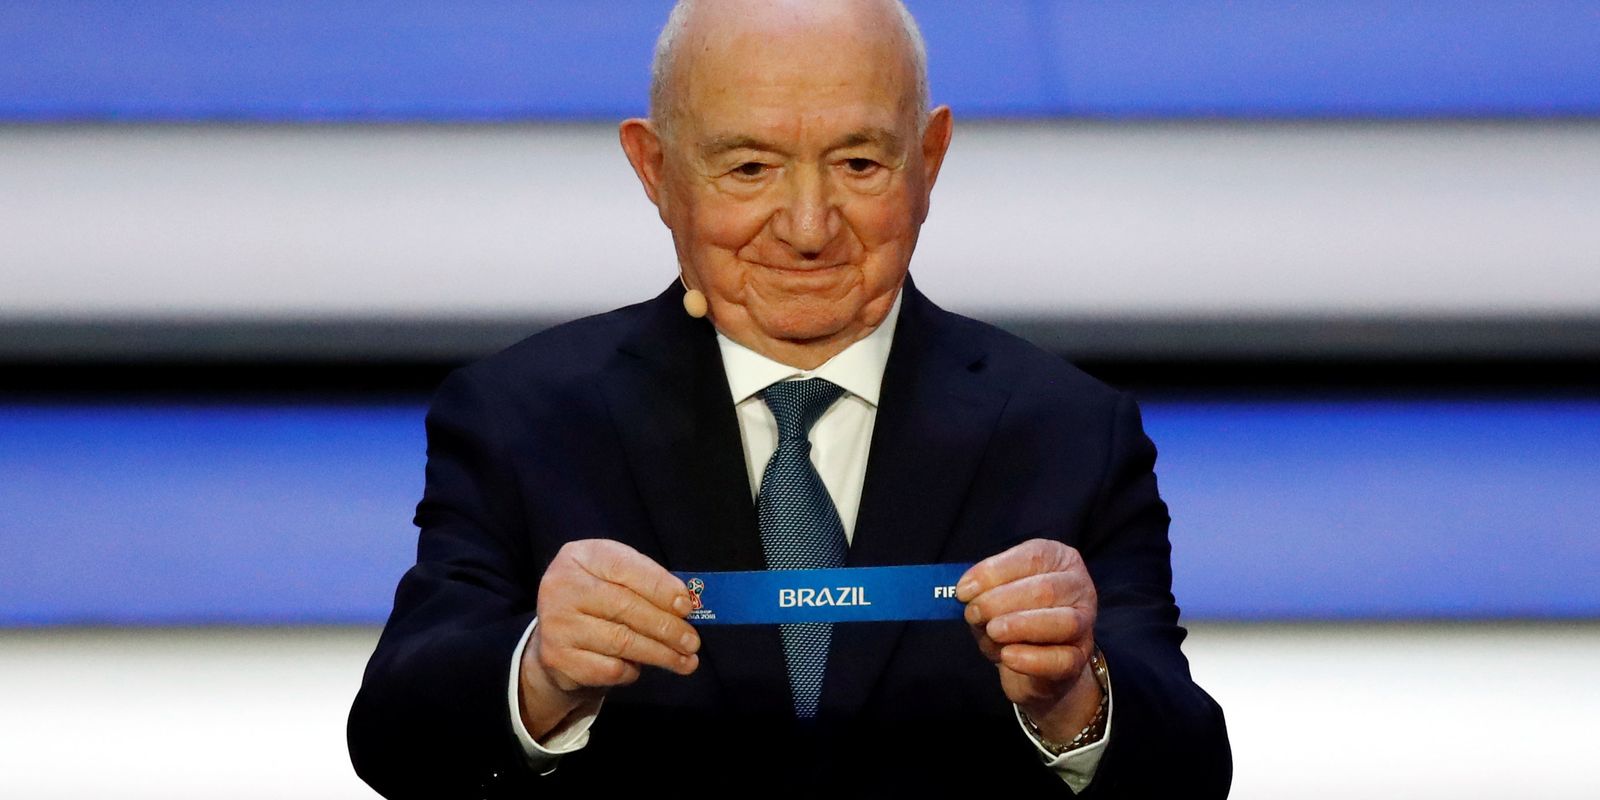 Rússia 2018: Saiba quem são as seleções do Grupo B na Copa do